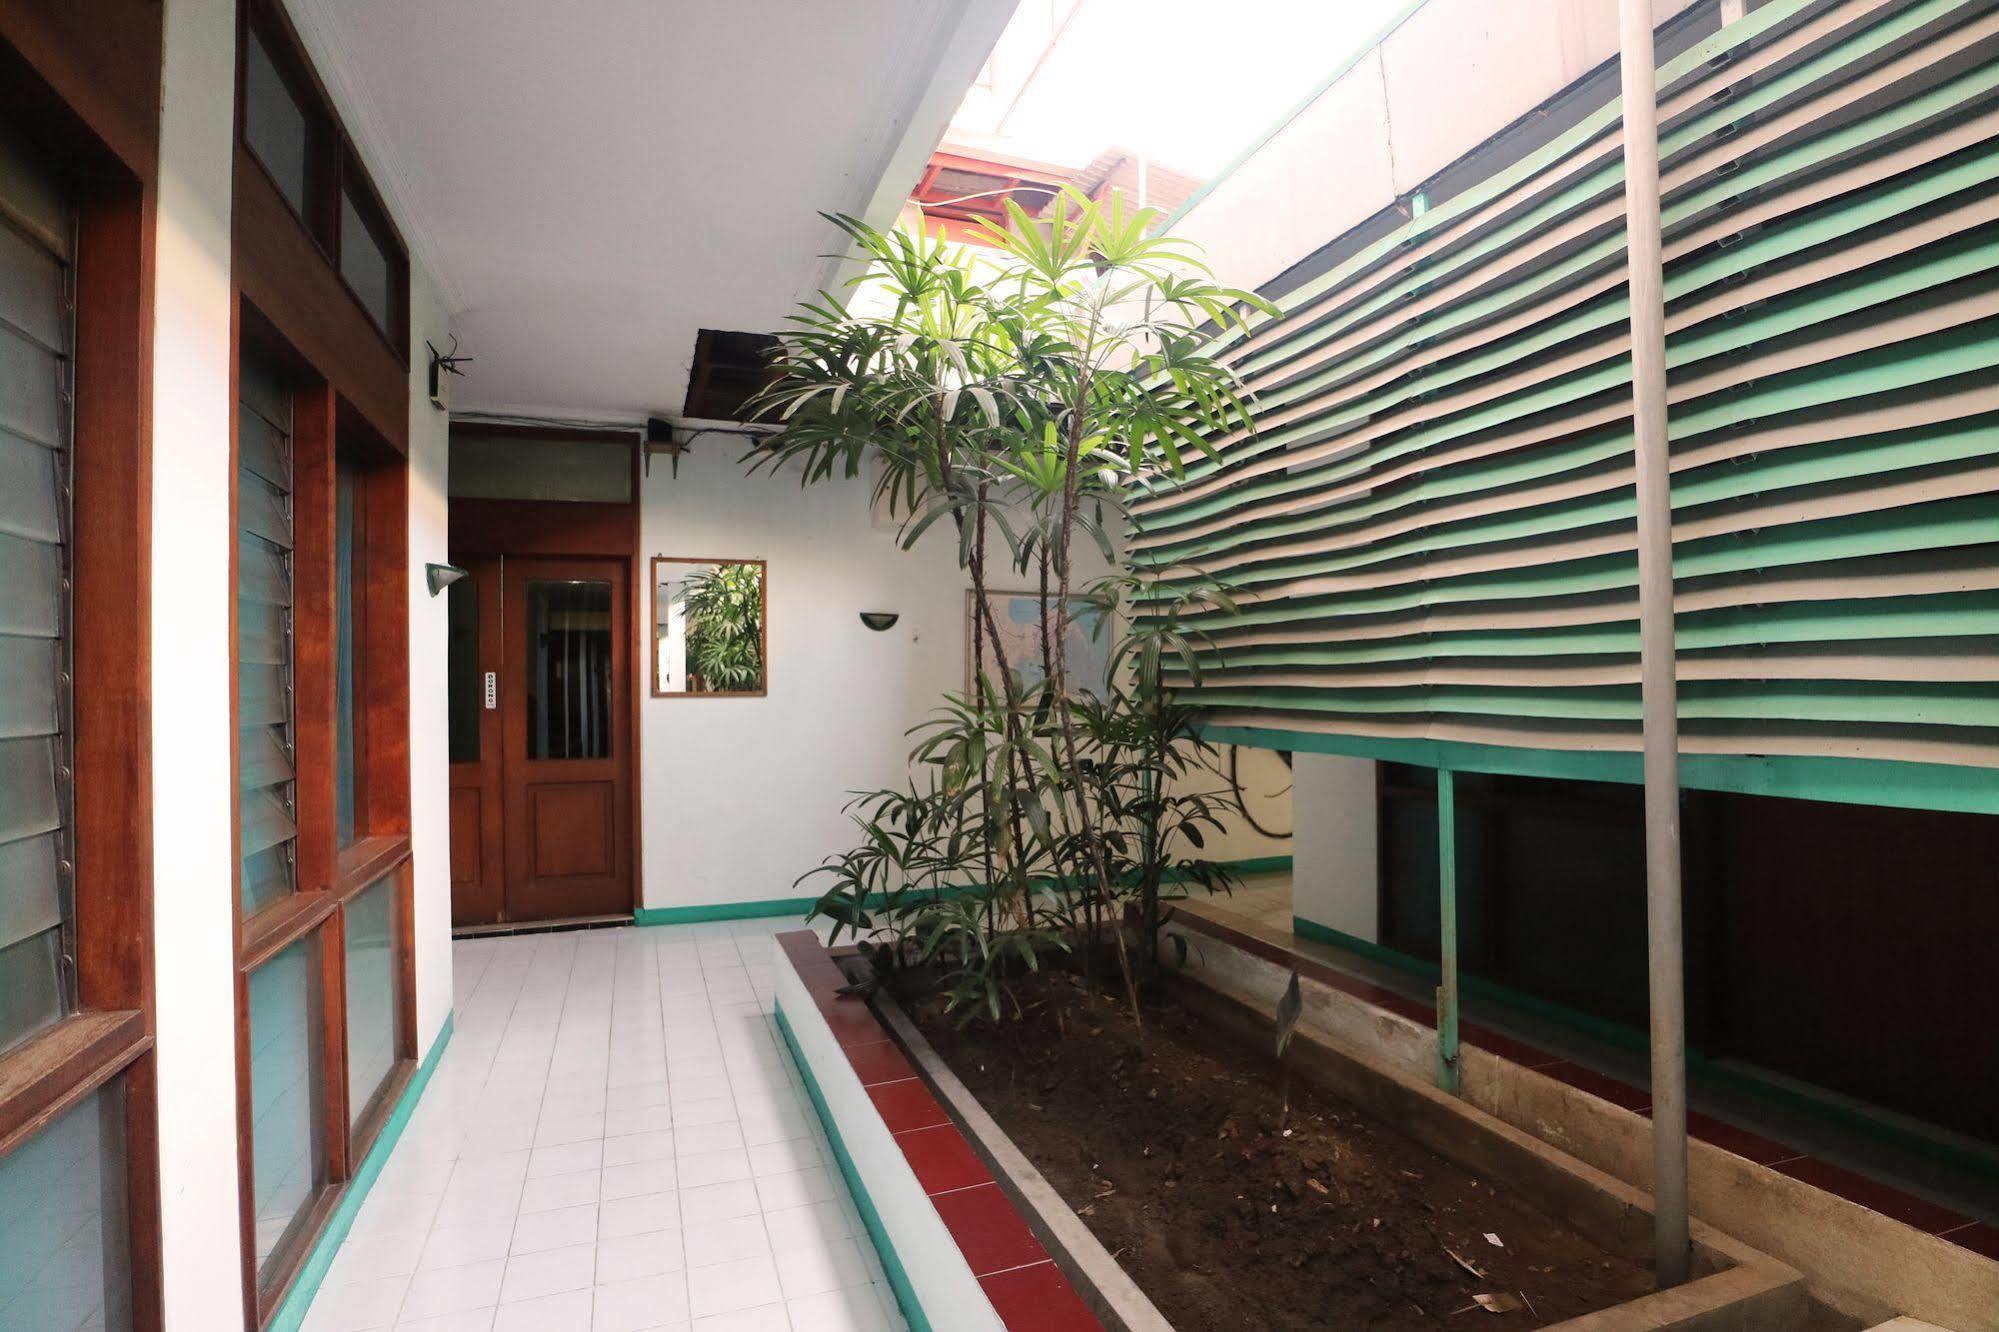 Hotel Kenongo Surabaya Exterior foto